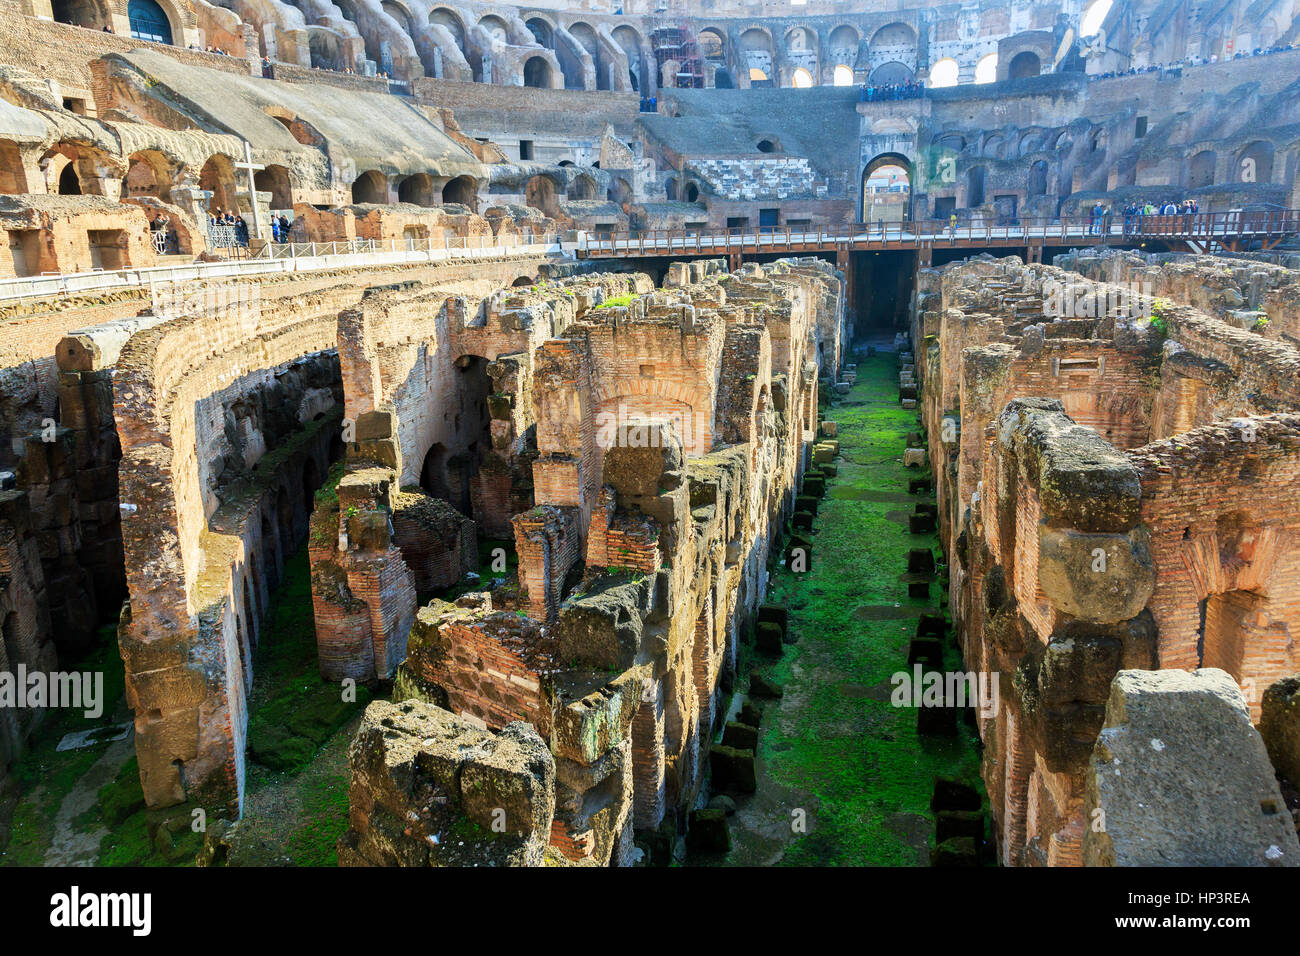 Vues du Colisée romain également appelé Flavian amphitheater, Rome, Italie Banque D'Images